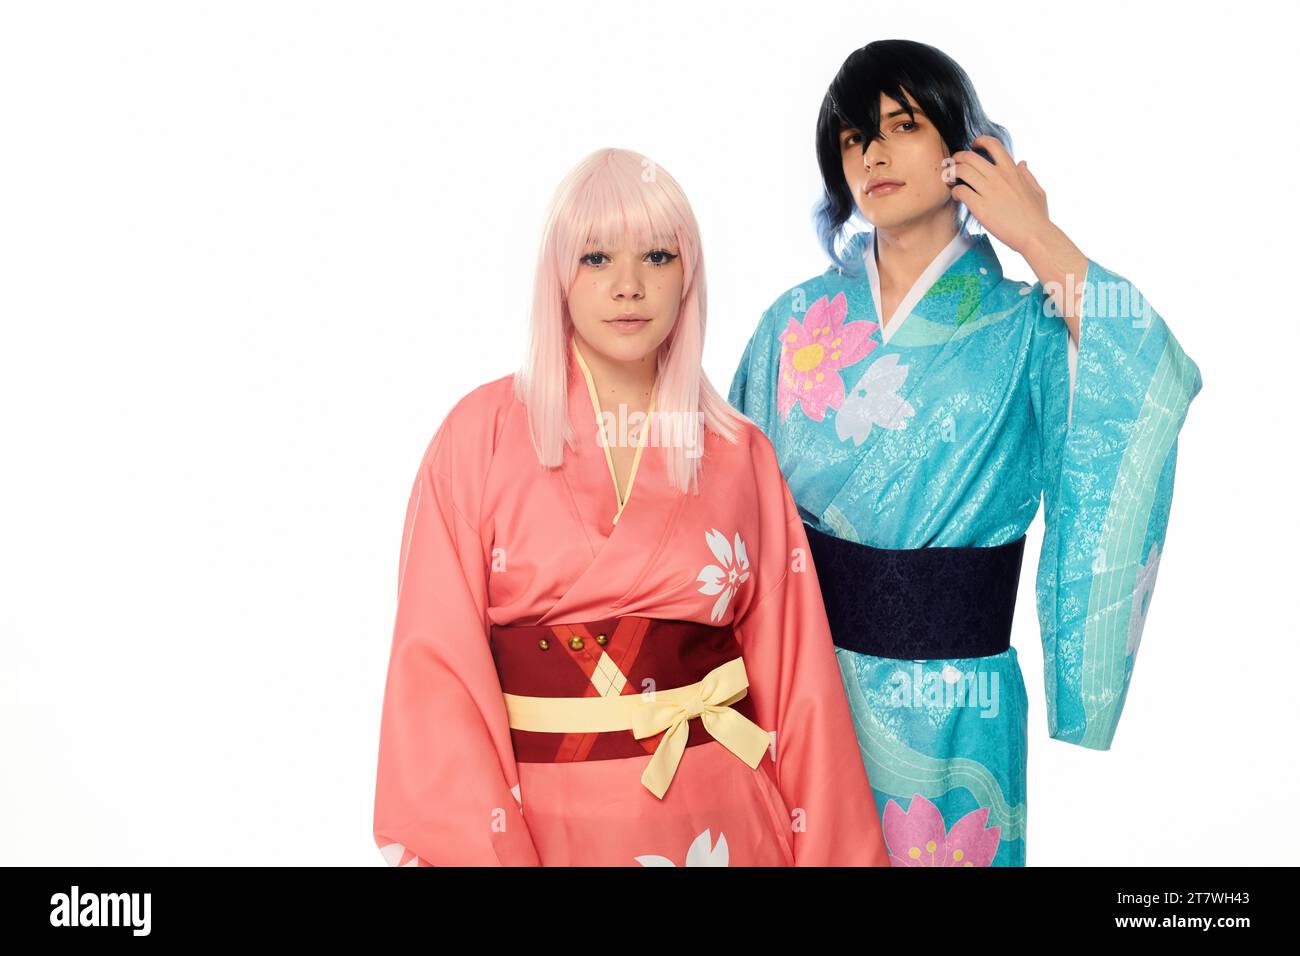 Junge Cosplay-Paar in bunten Kimonos und Perücken, die auf weißem, horizontalem Banner in die Kamera schauen Stockfoto